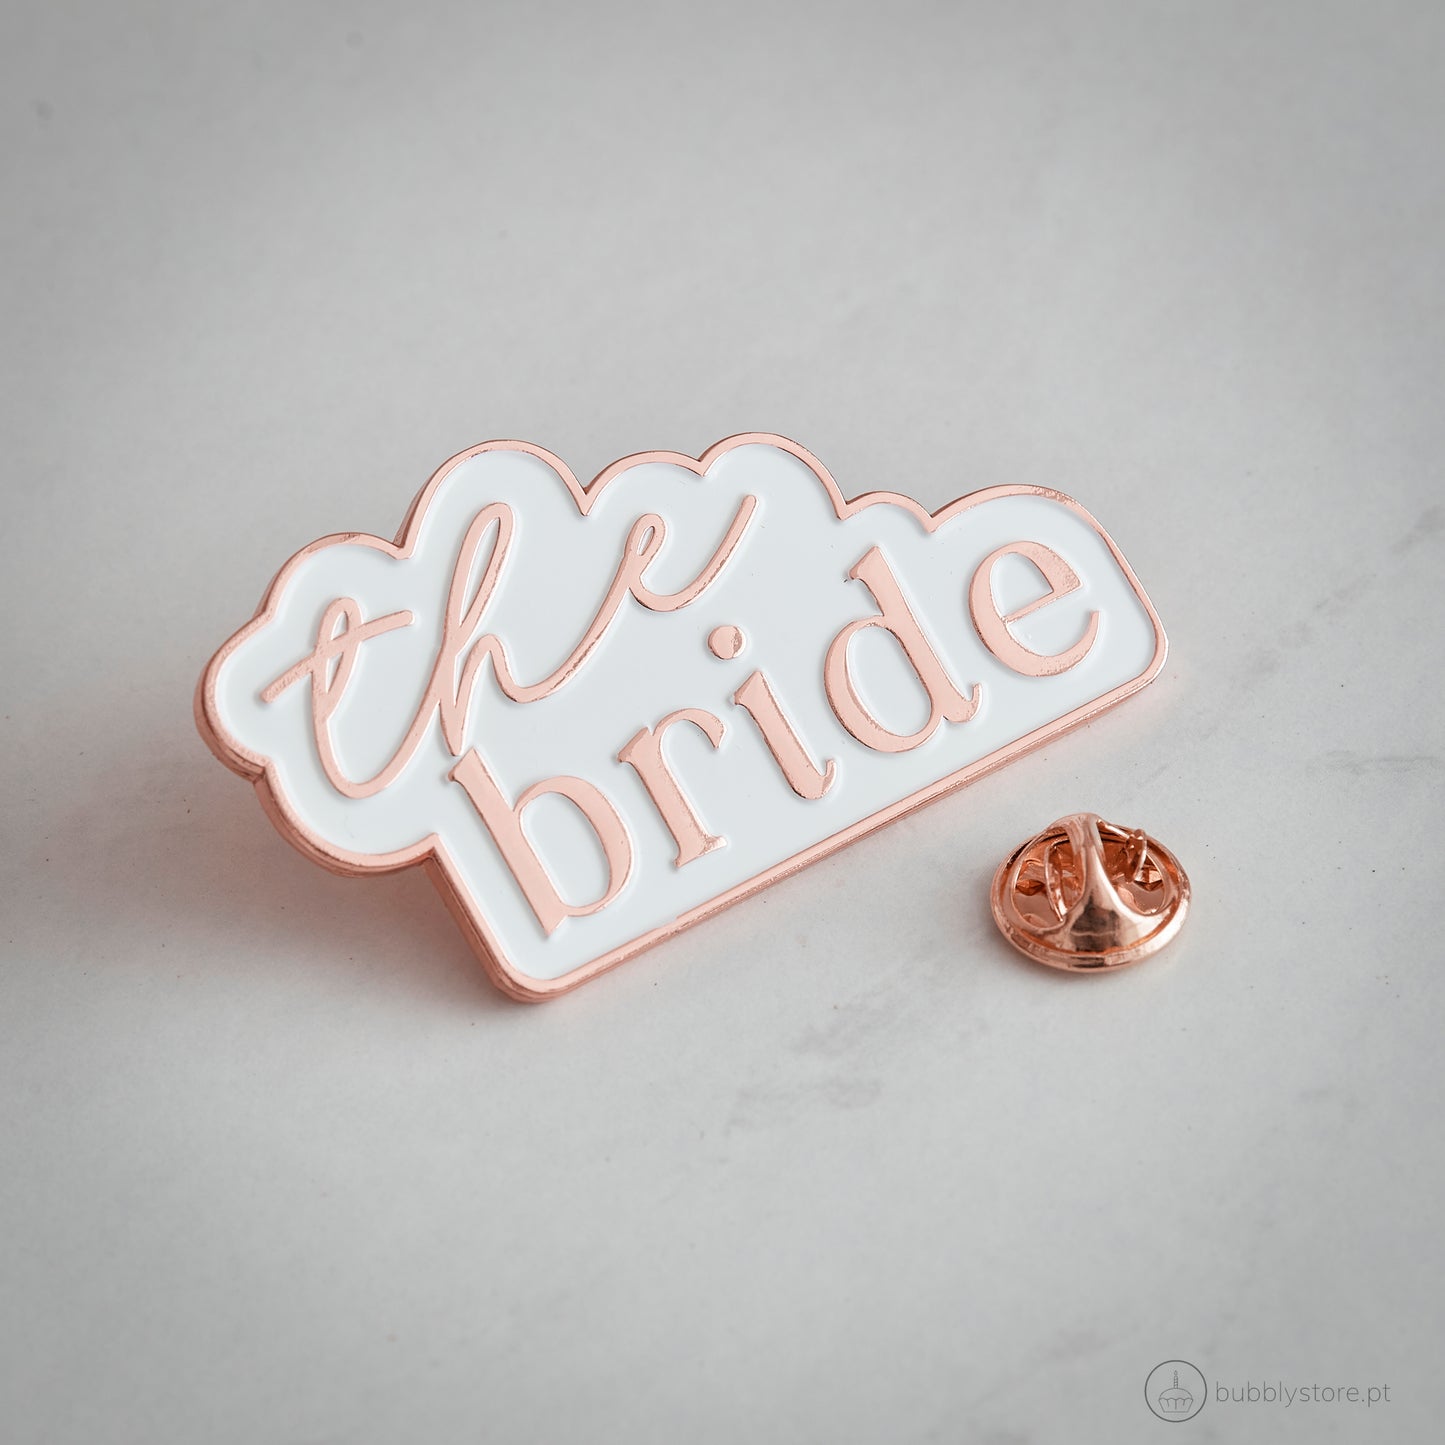 Bride Badge